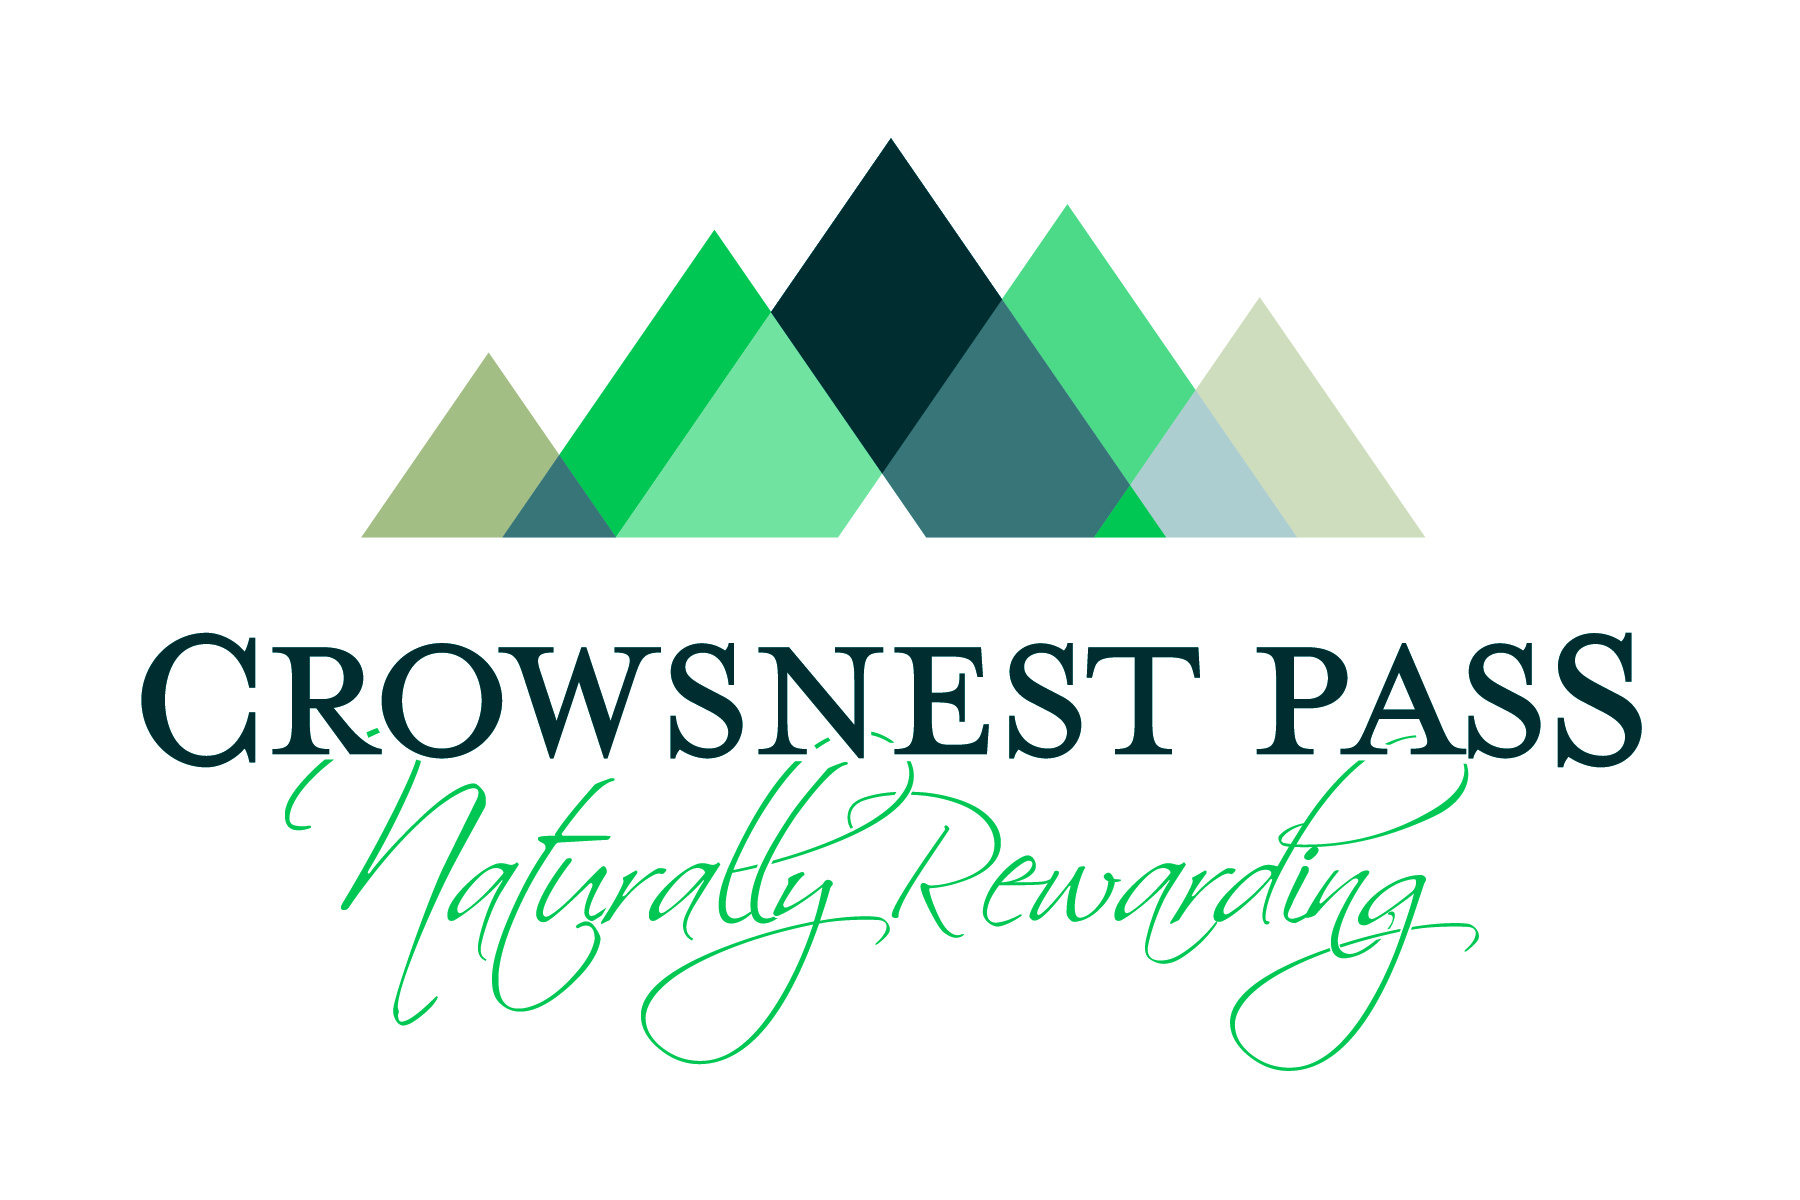 Municipality of Crowsnest Pass